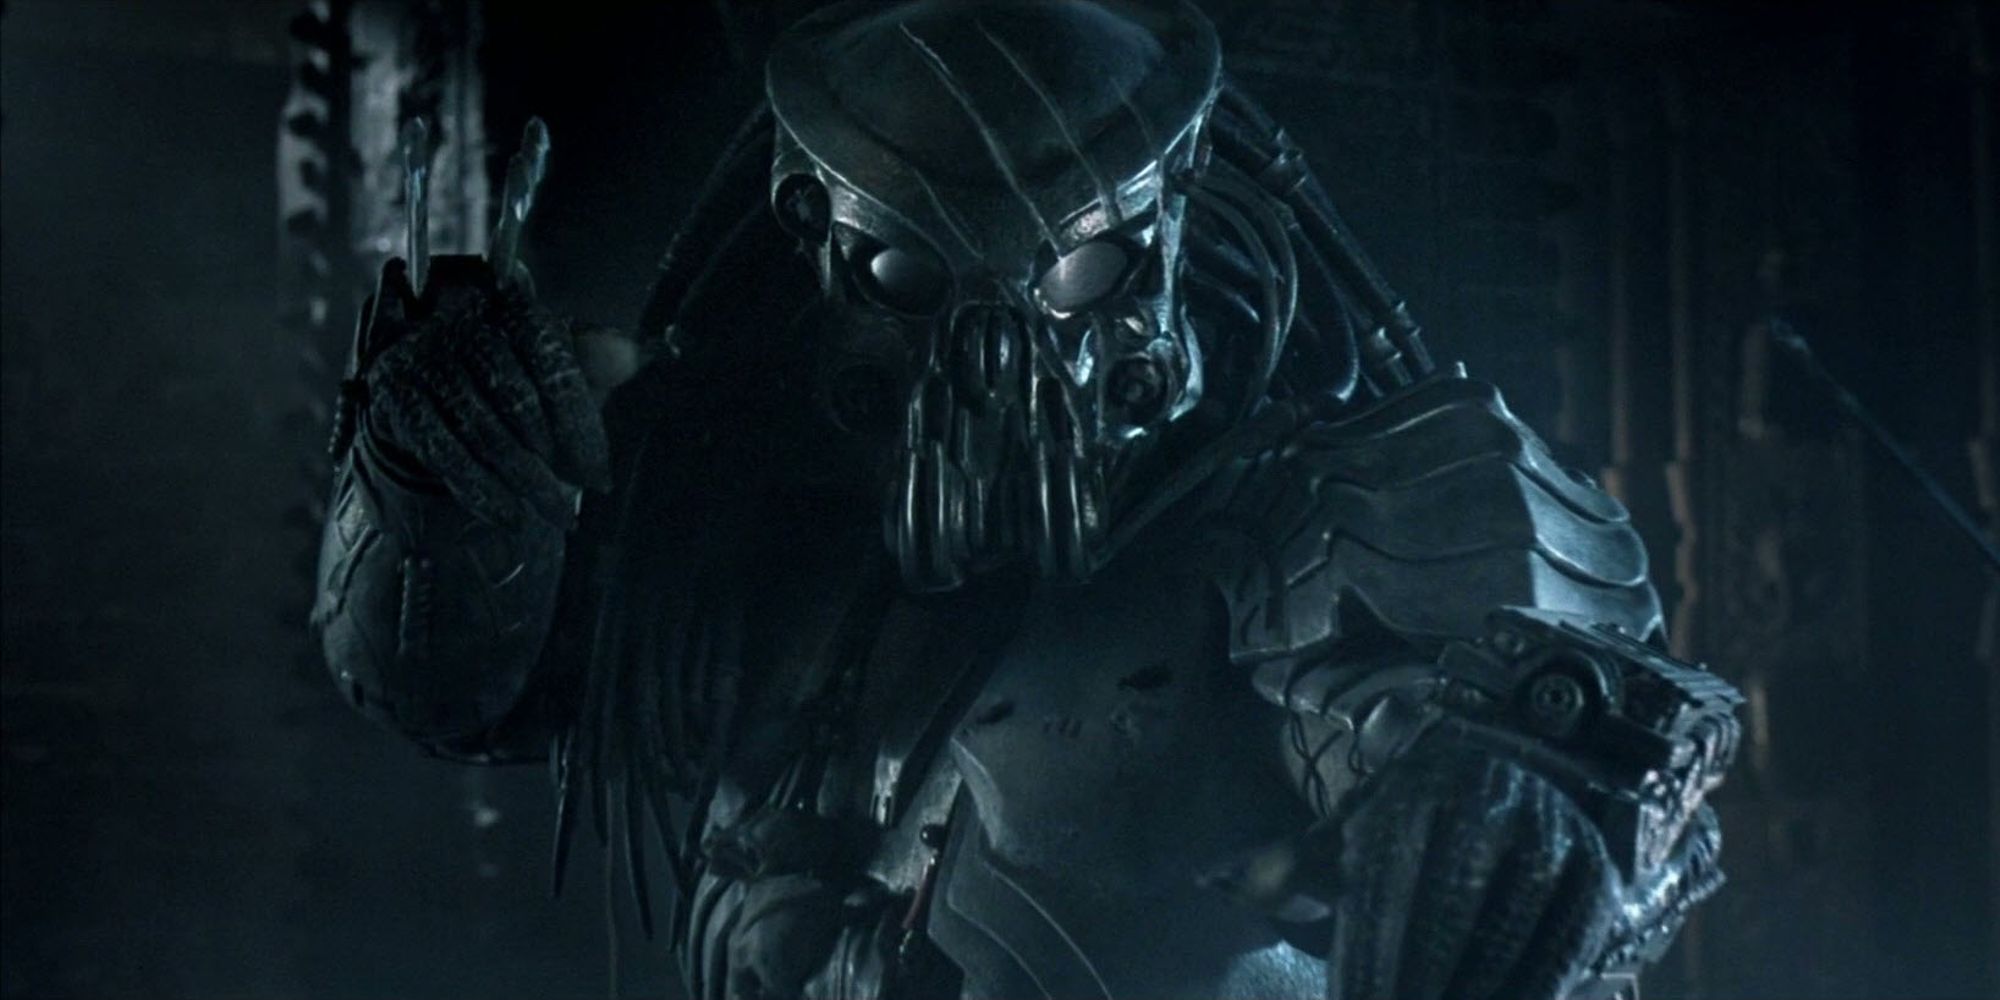 Celtic Predator readying his wrist blades for battle in Alien Vs. Predator (2004)